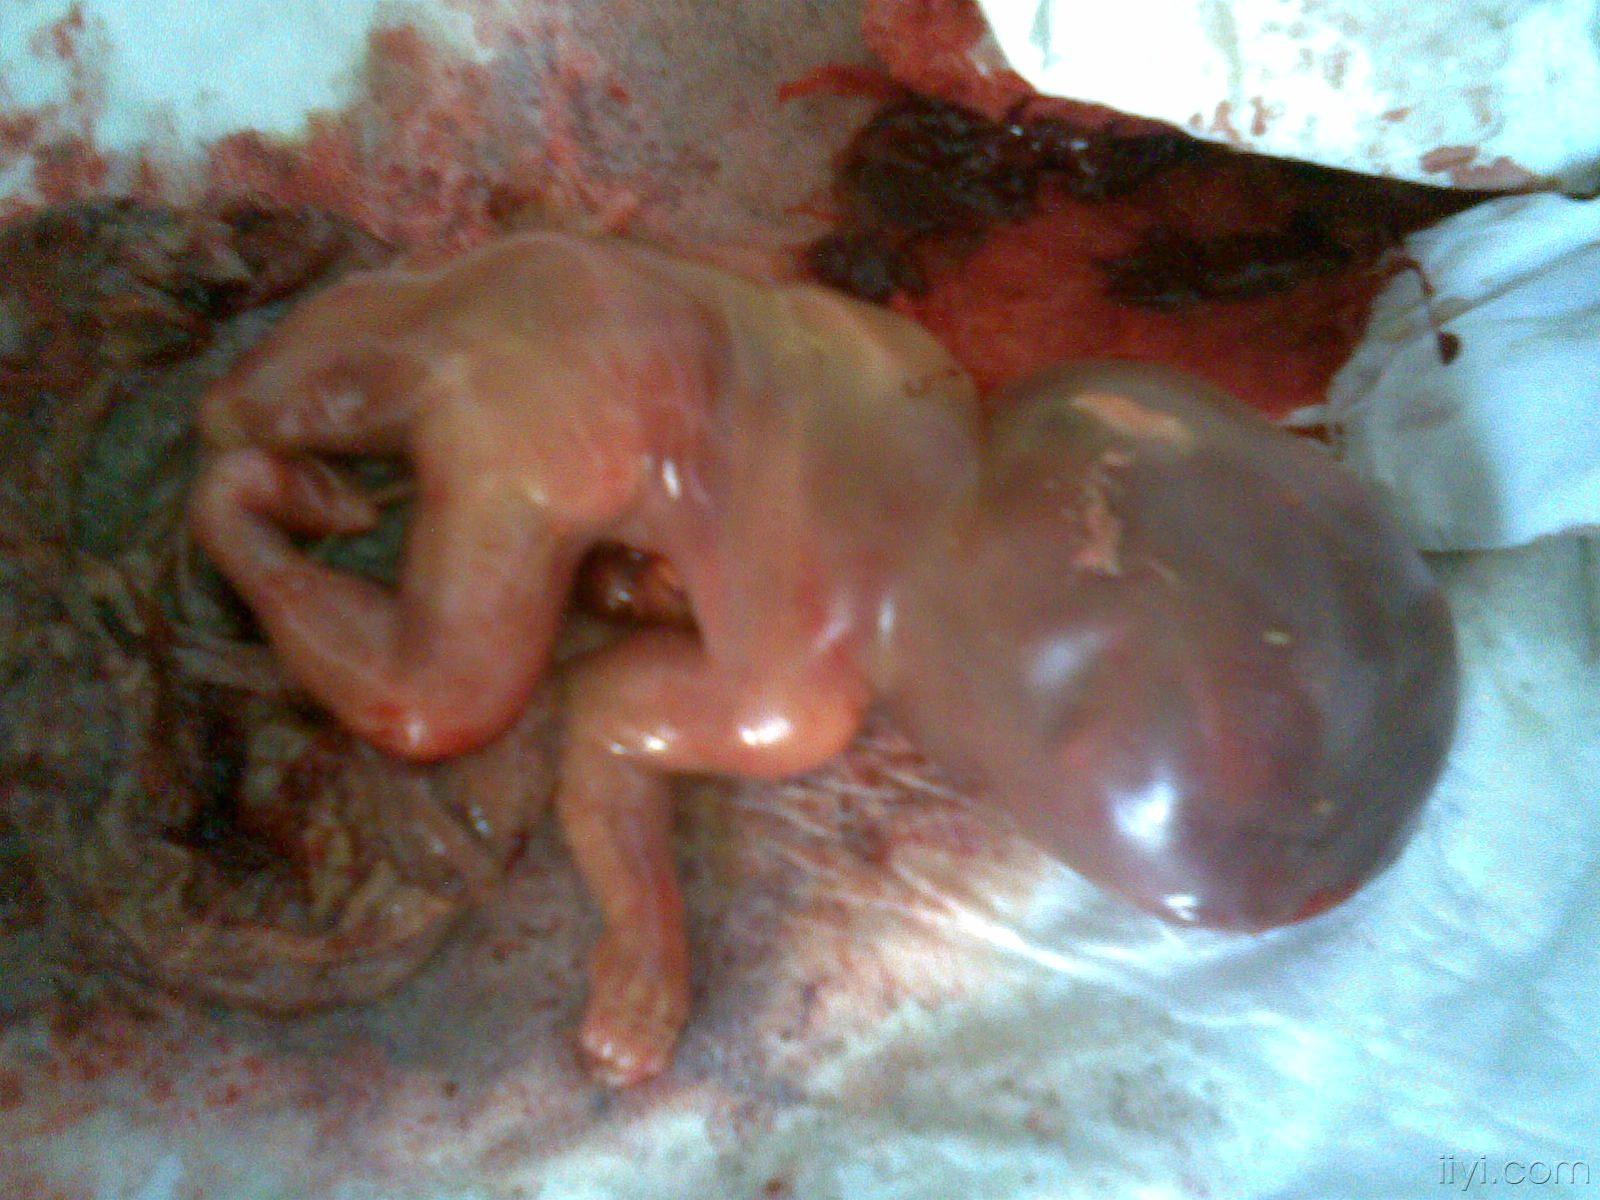 6个月引产的胎儿图片图片